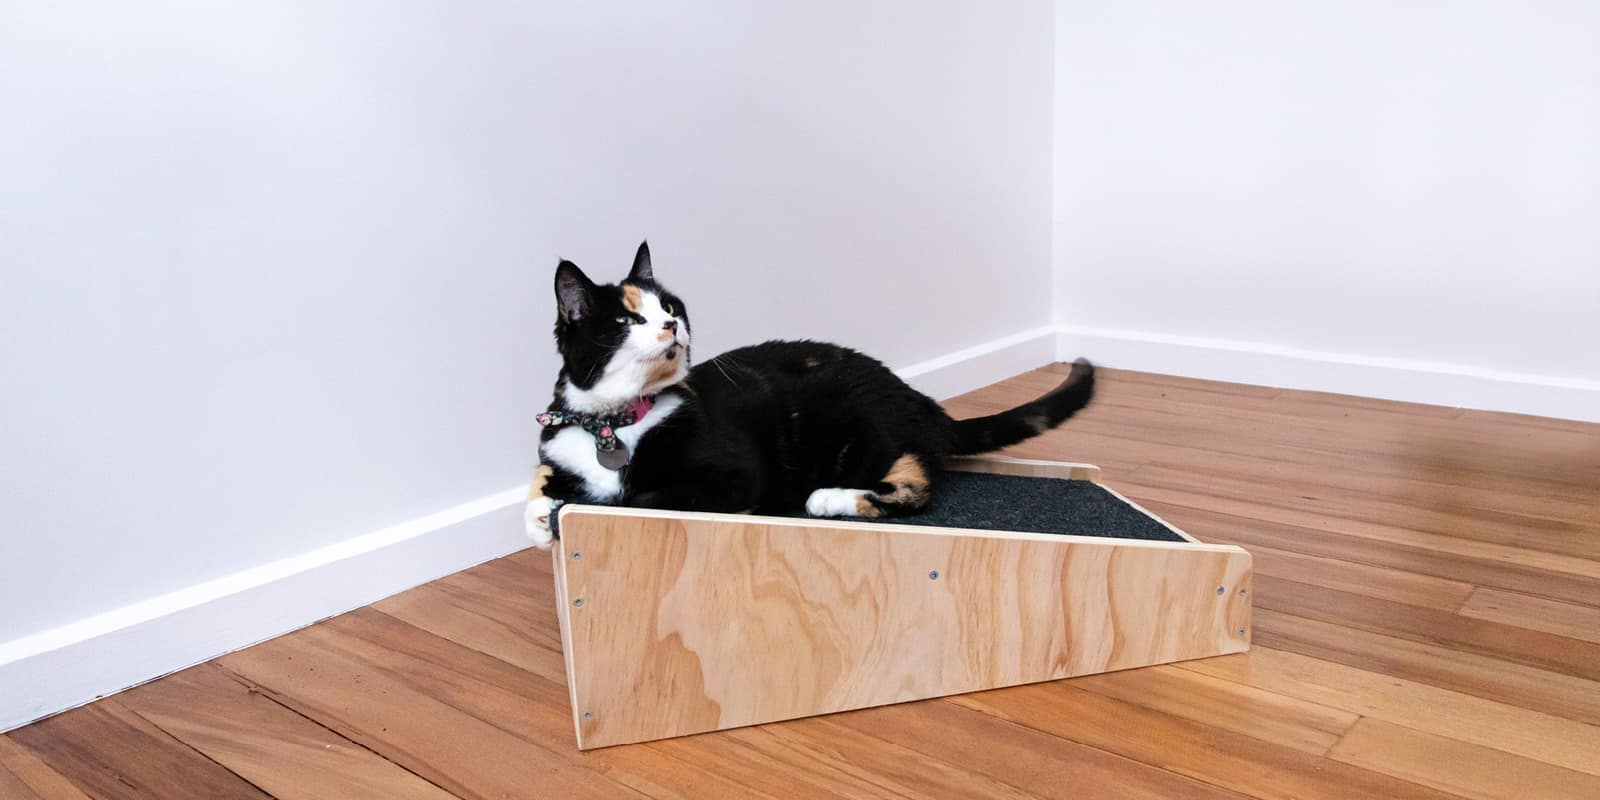 free standing cat furniture - carpet saver cat scratcher